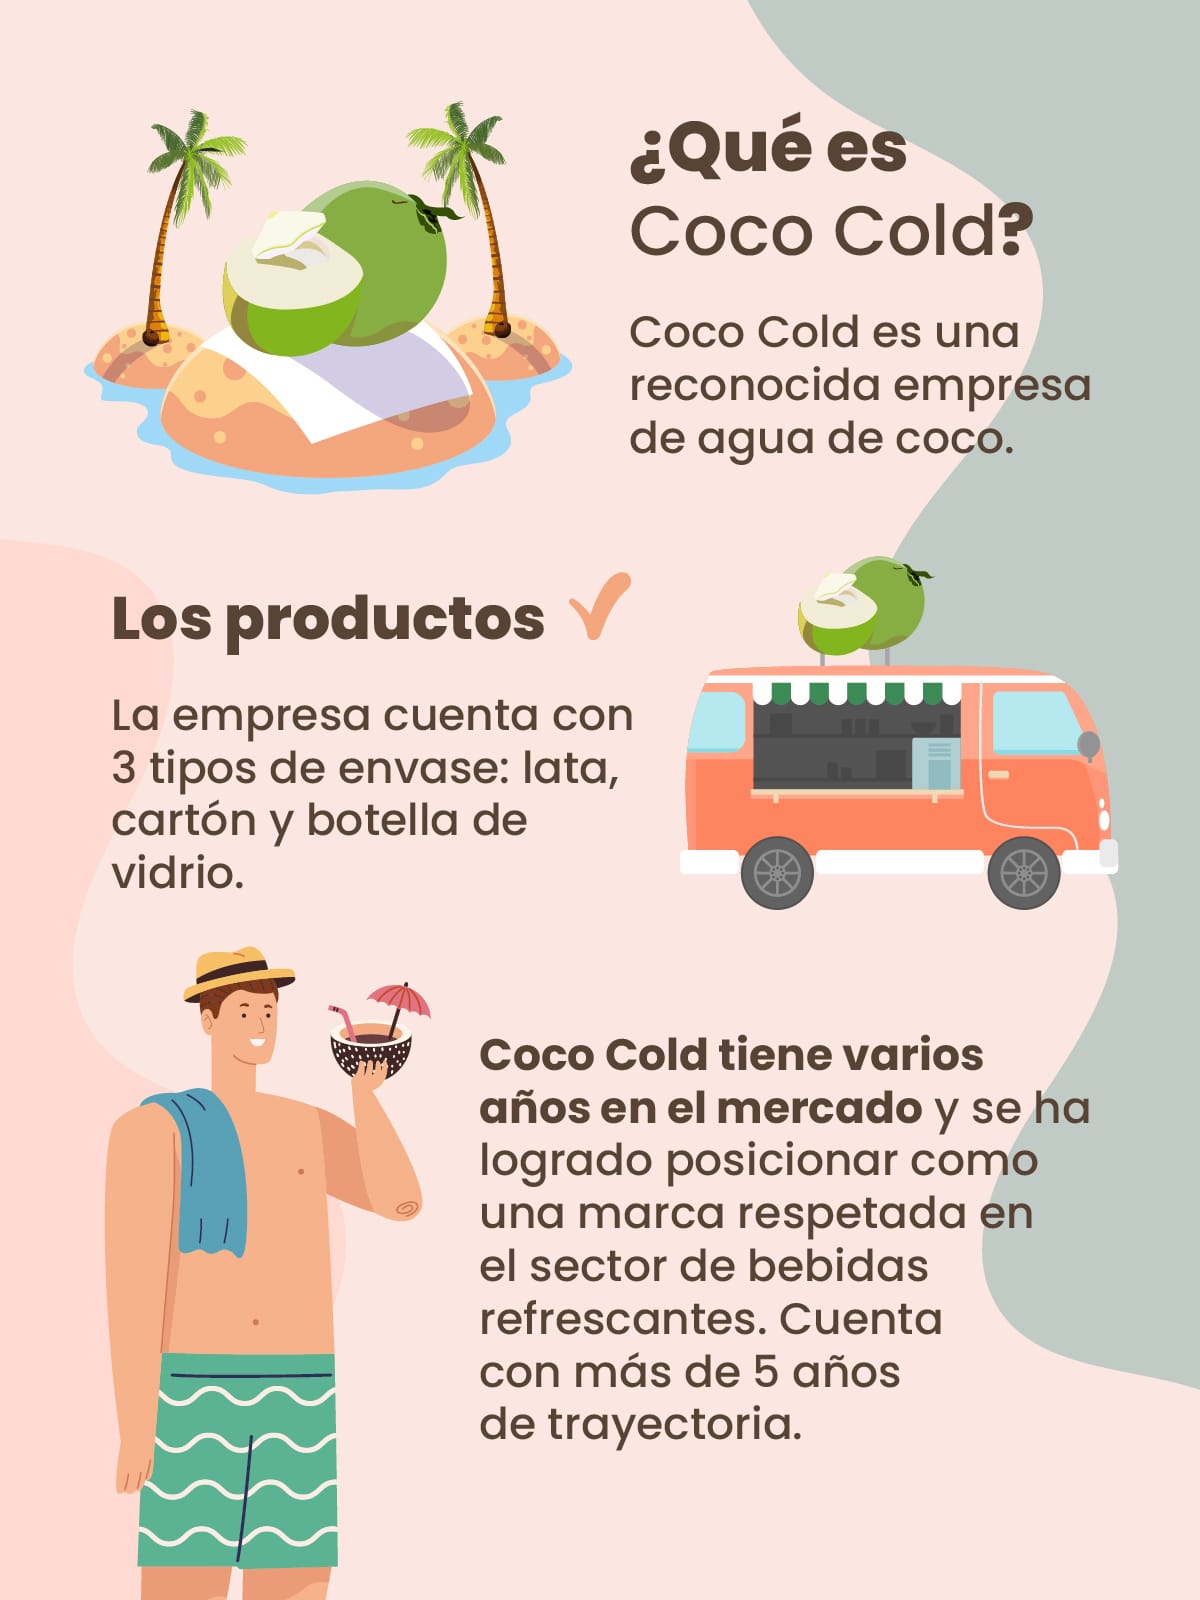 Valores misión y visión de una empresa de agua de coco. Caso “Coco Cold”.